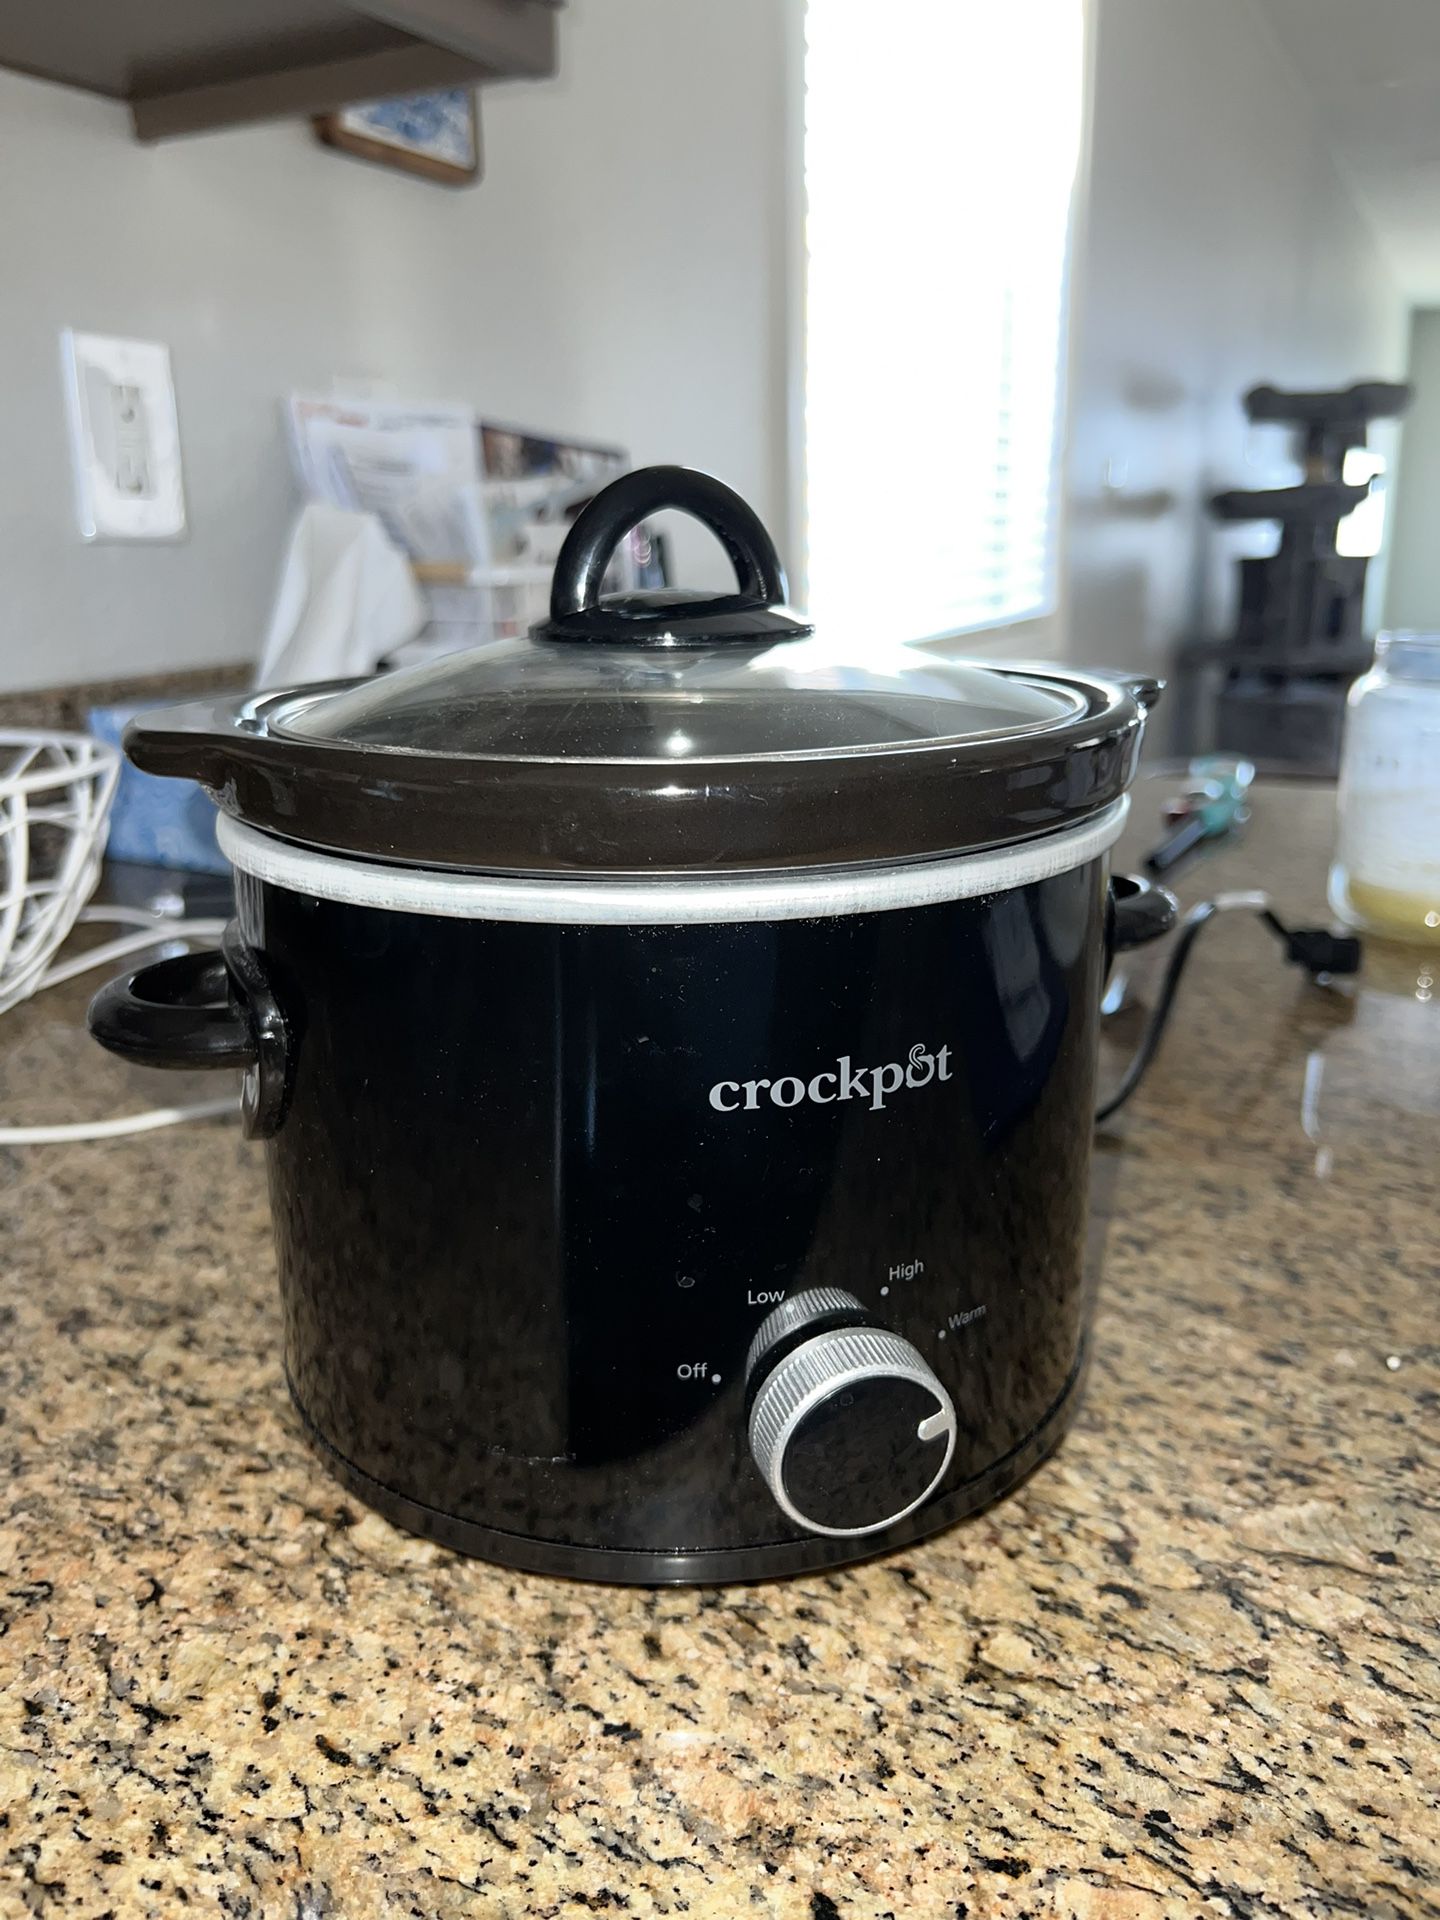 Crock-pot 7 Quart Manual Black Slow Cooker